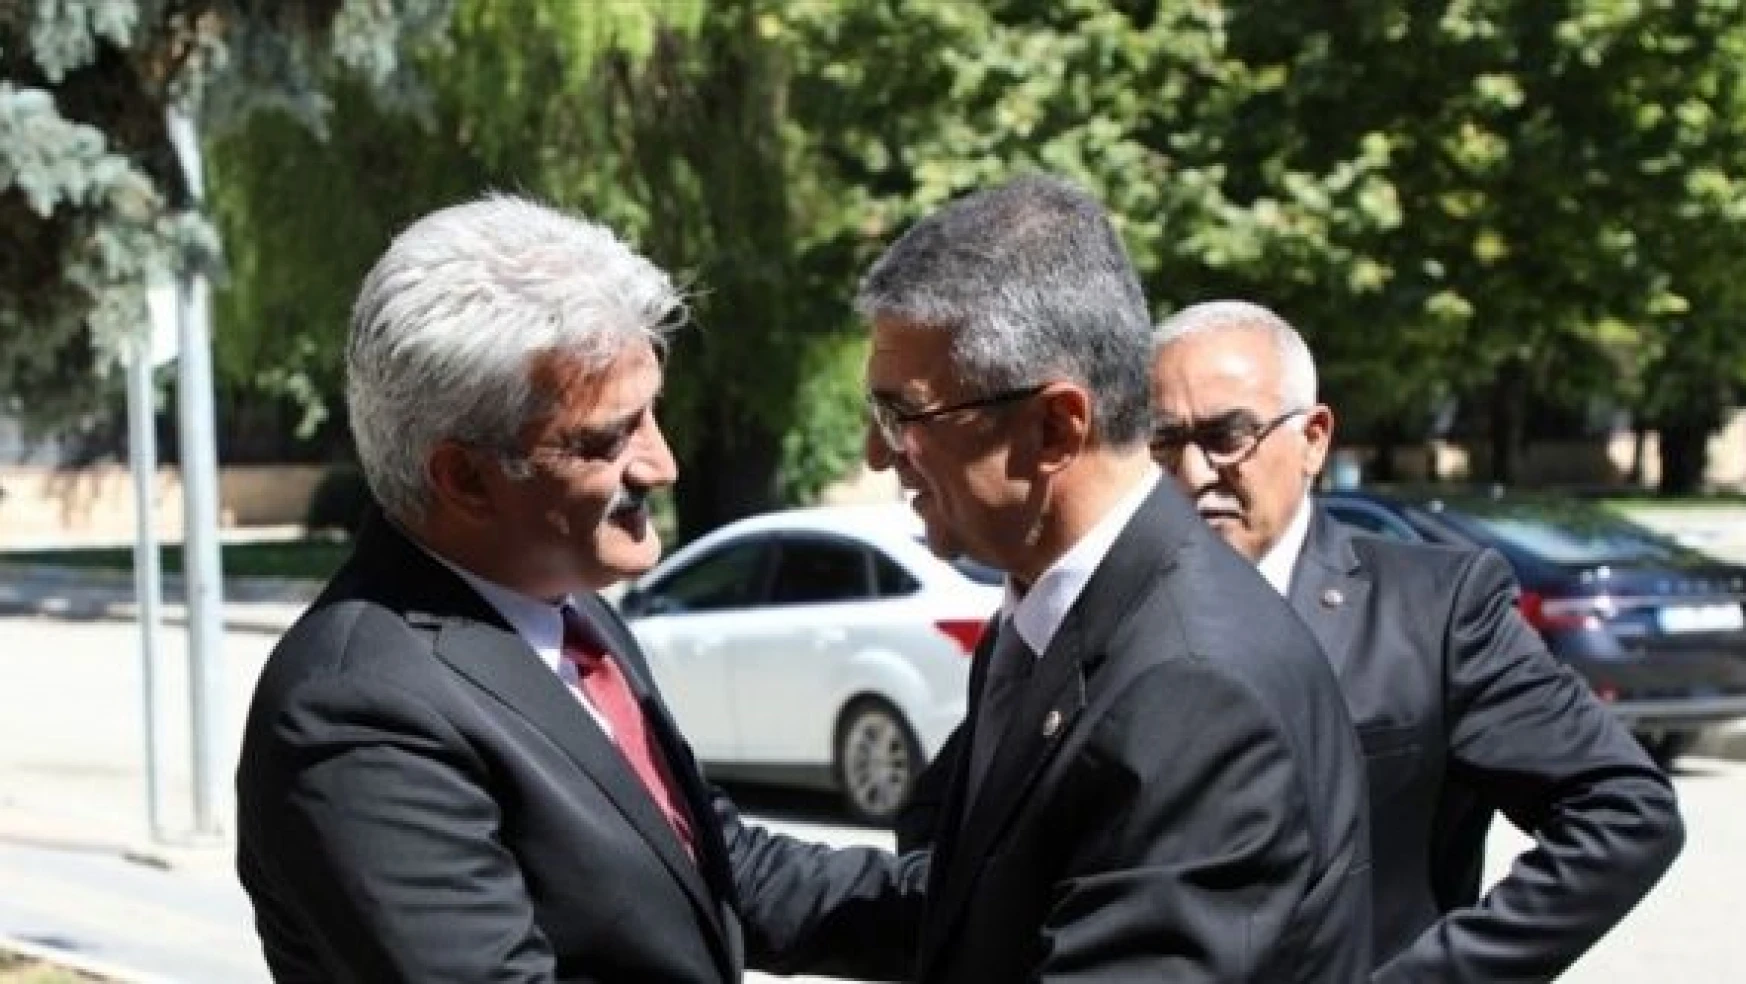 MHP Genel Başkan Yardımcısı Kamil Aydın'dan Vali Makas'a ziyaret